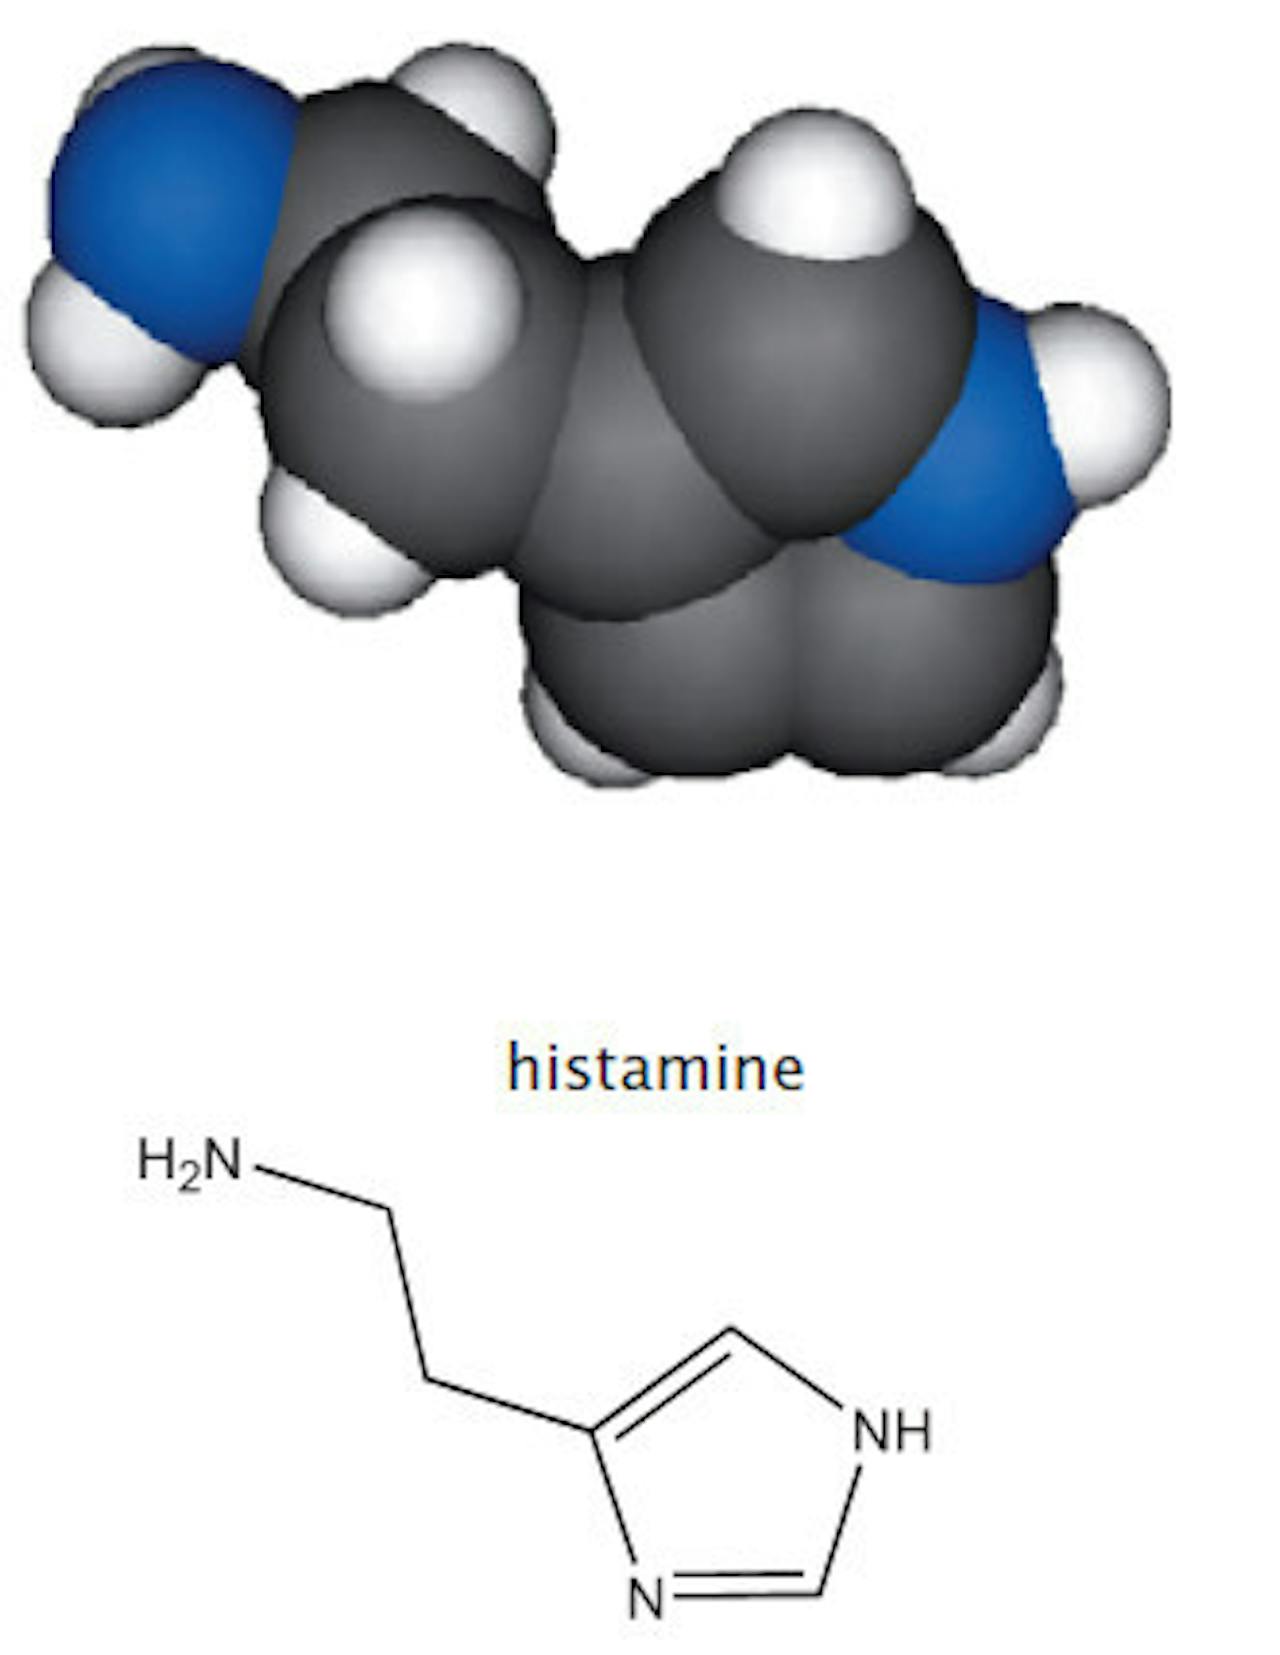 Een afbeelding van histamine, een chemische verbinding.